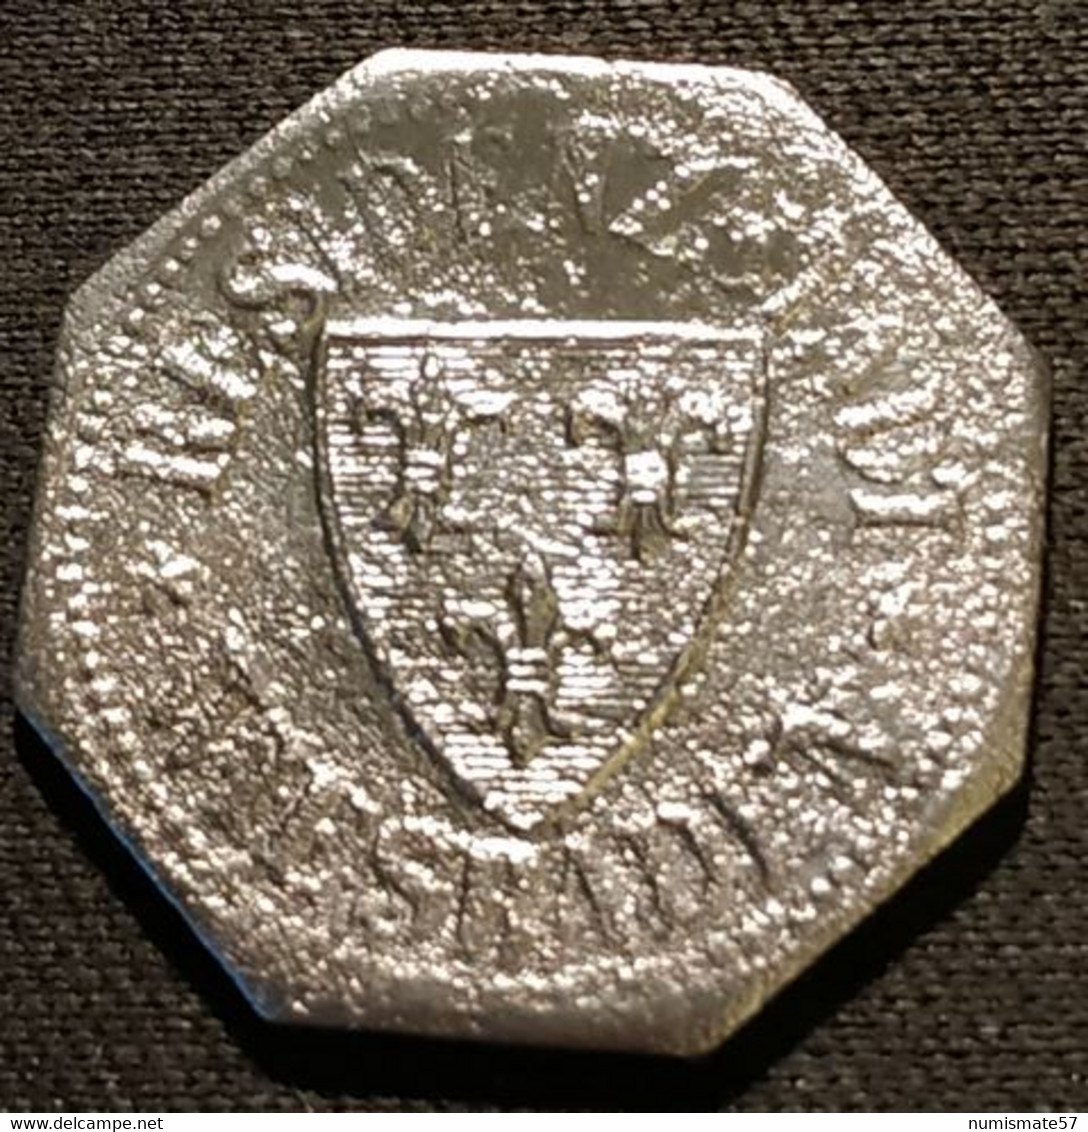 ALLEMAGNE - GERMANY - 10 Pfennig Wiesbaden 1917 - Funck# 601.1 - ( KRIEGSGELD ) - Monetary/Of Necessity